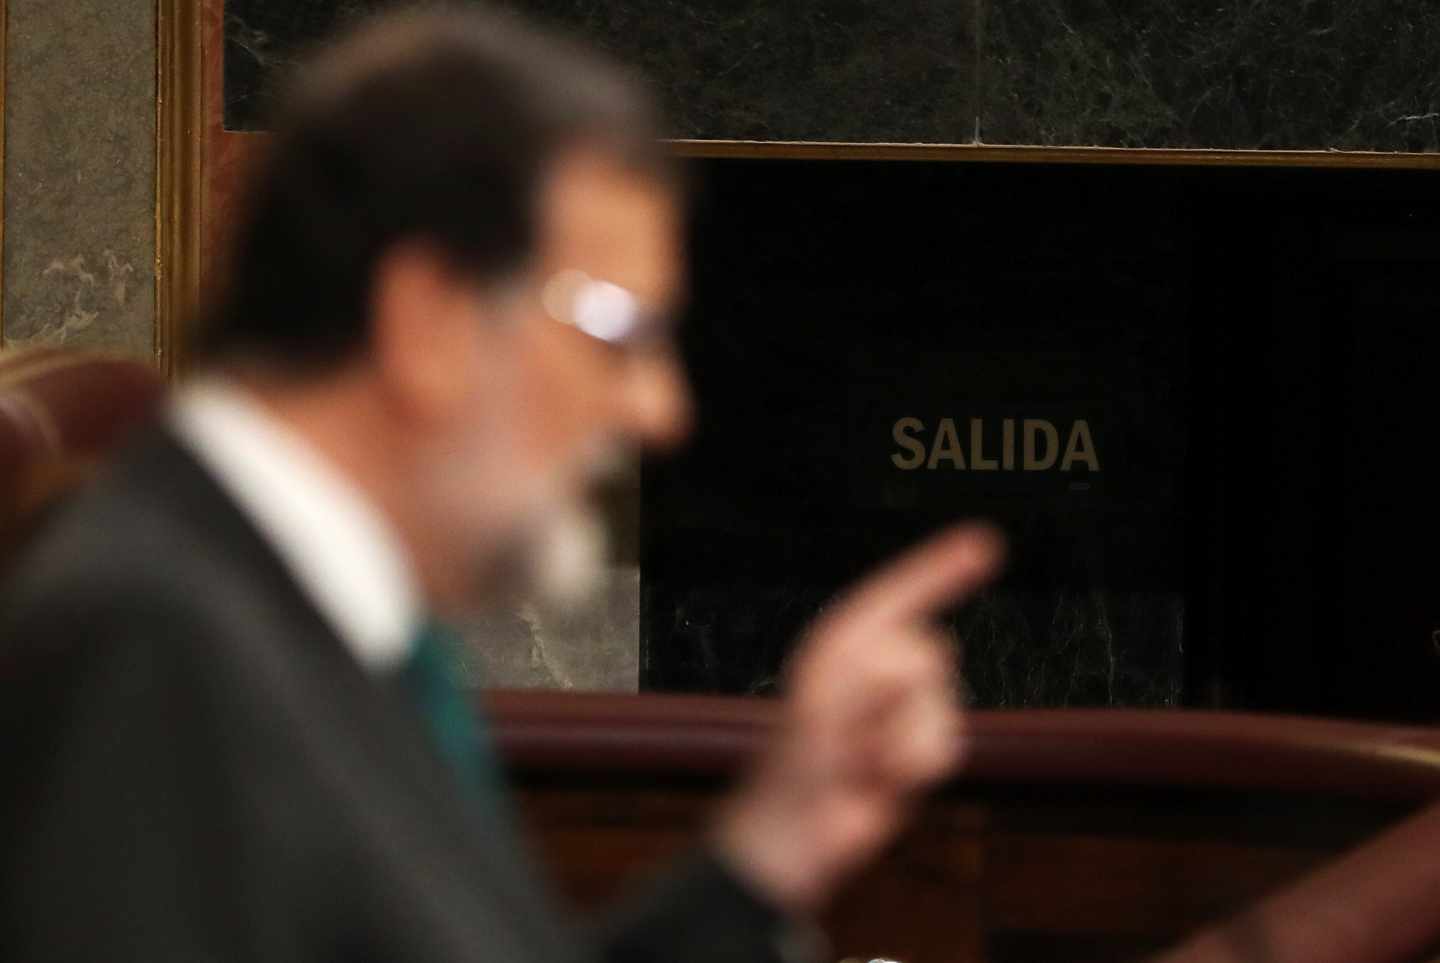 Moción de censura: Mariano Rajoy, en la tribuna del Congreso.